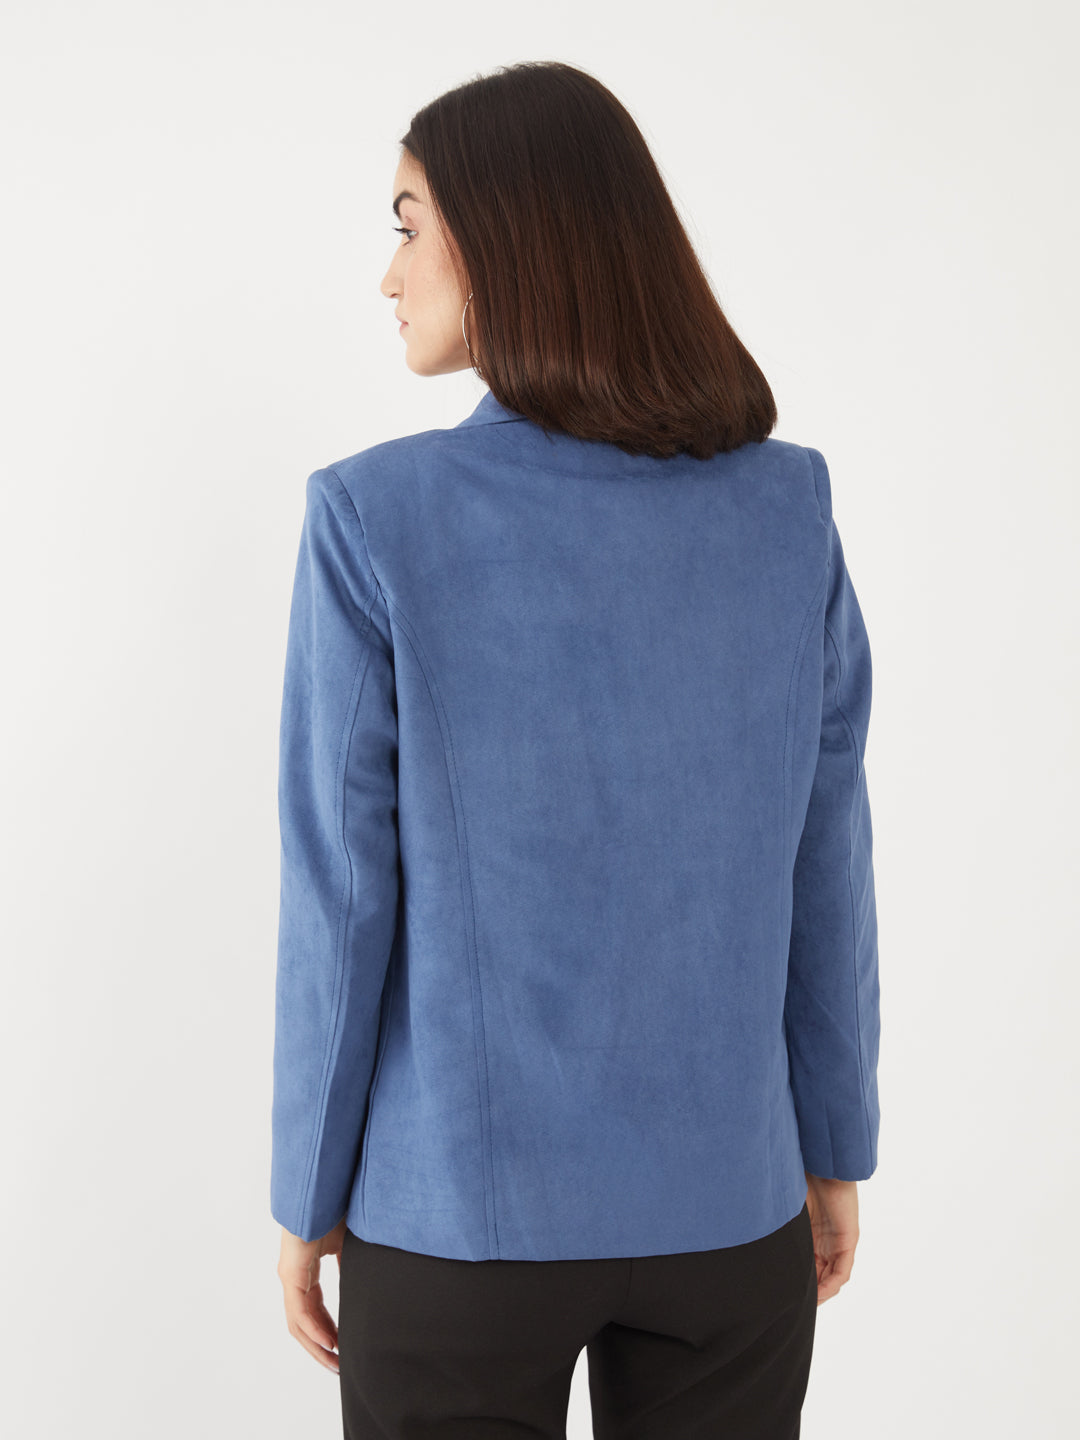 Blue Solid Regular Jacket For Women